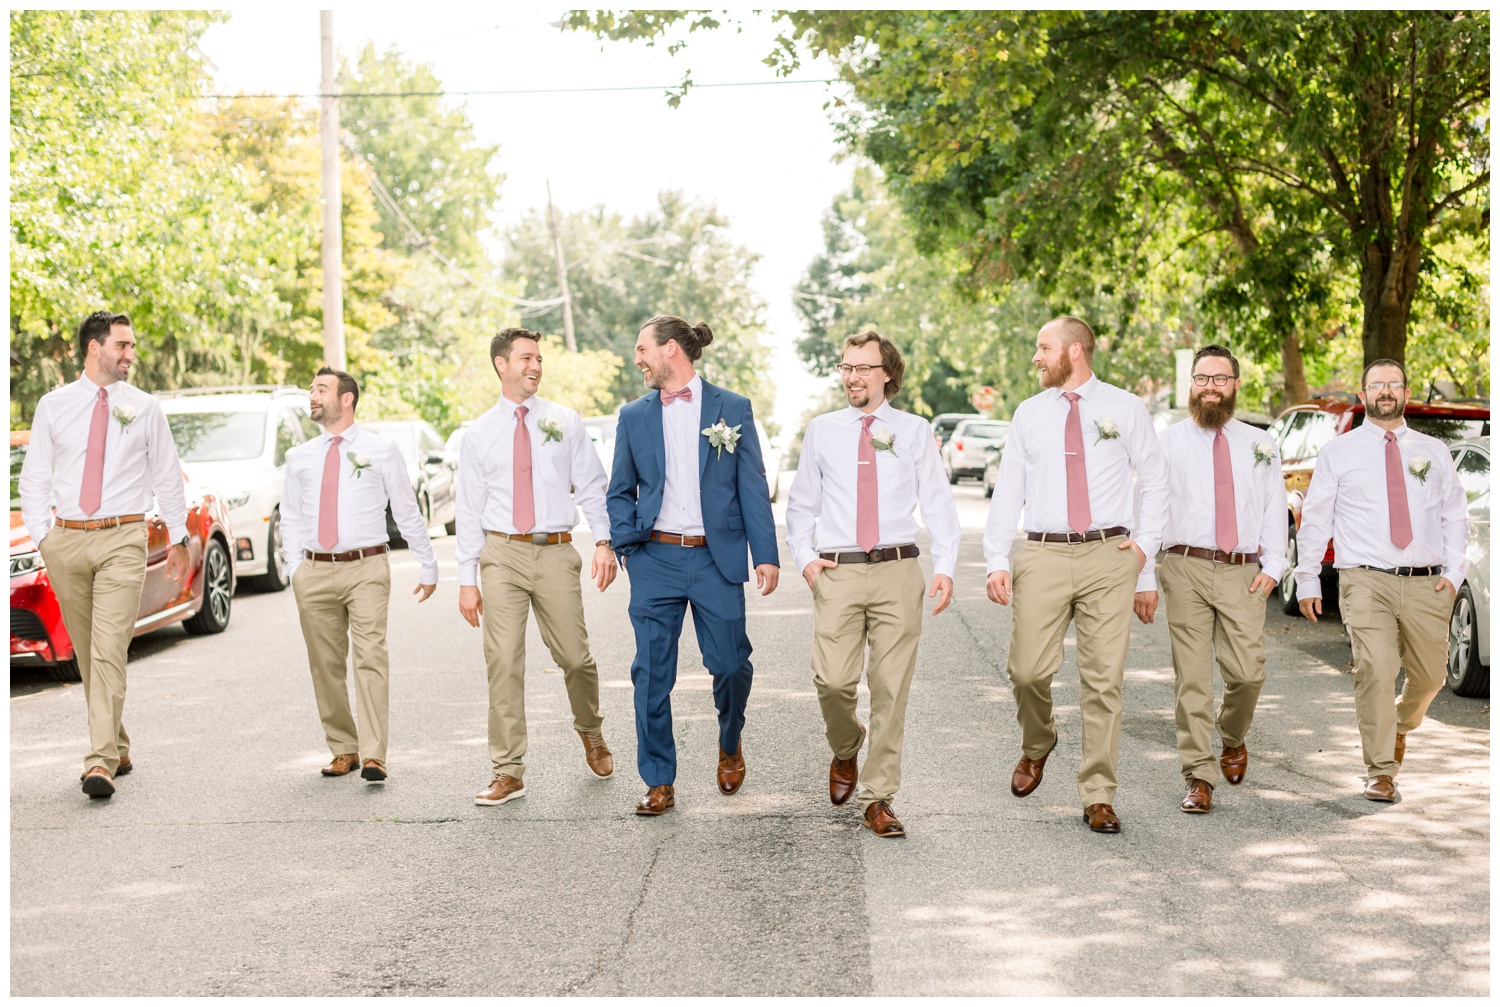 Cincinnati Groomsmen Walking on Street - Bridal Party Pictures